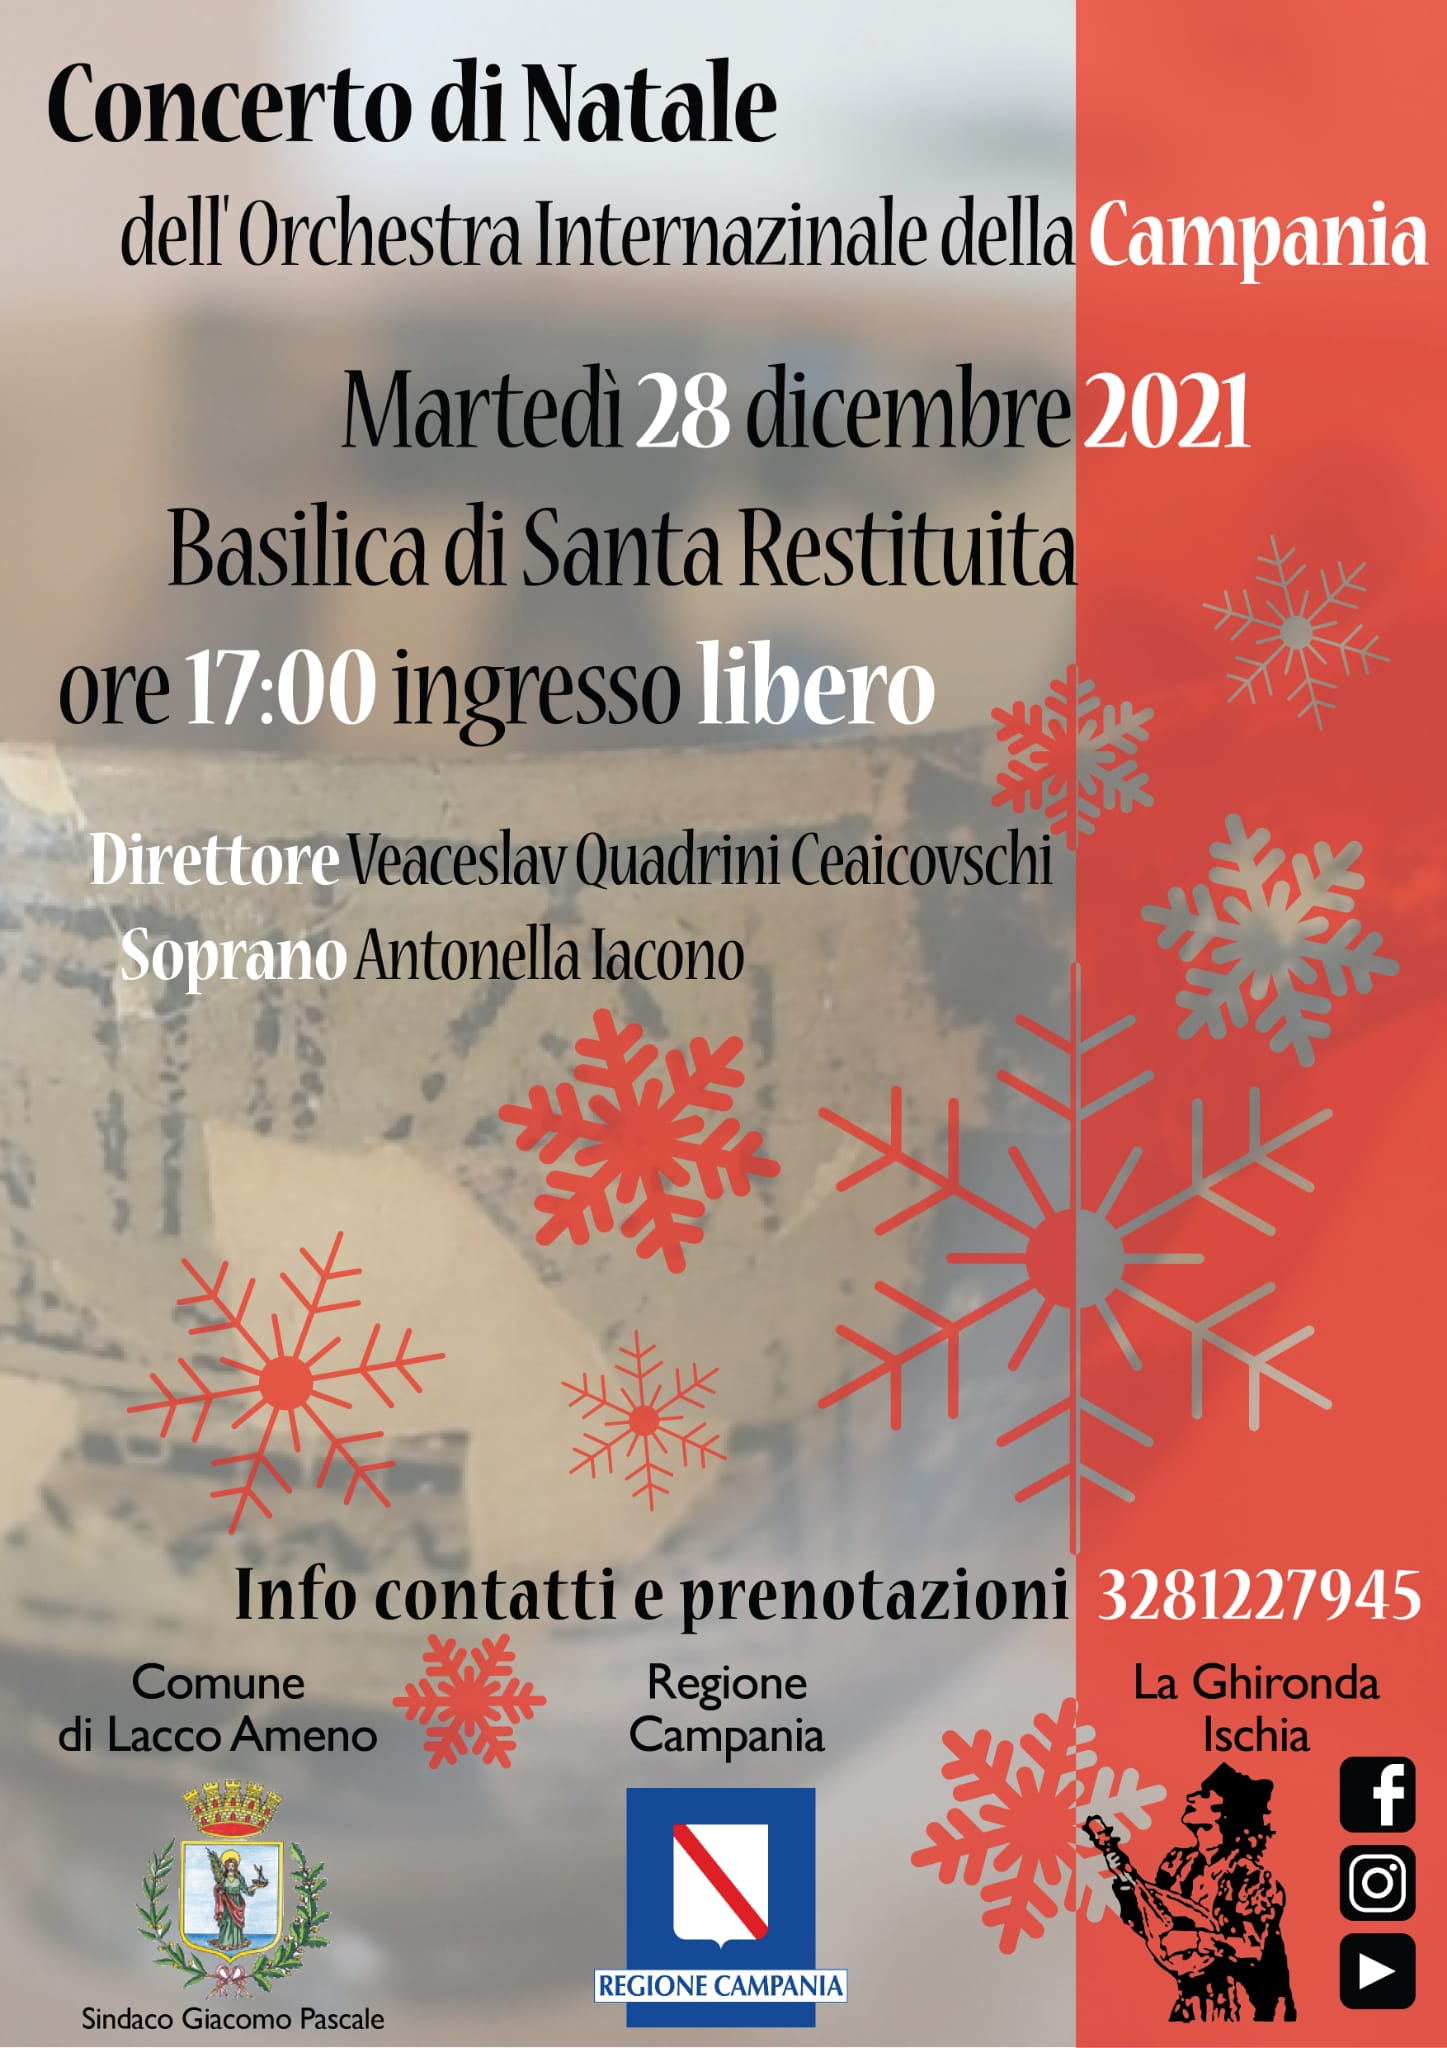 Concerto di Natale dell'Orchestra Internazionale della Campania